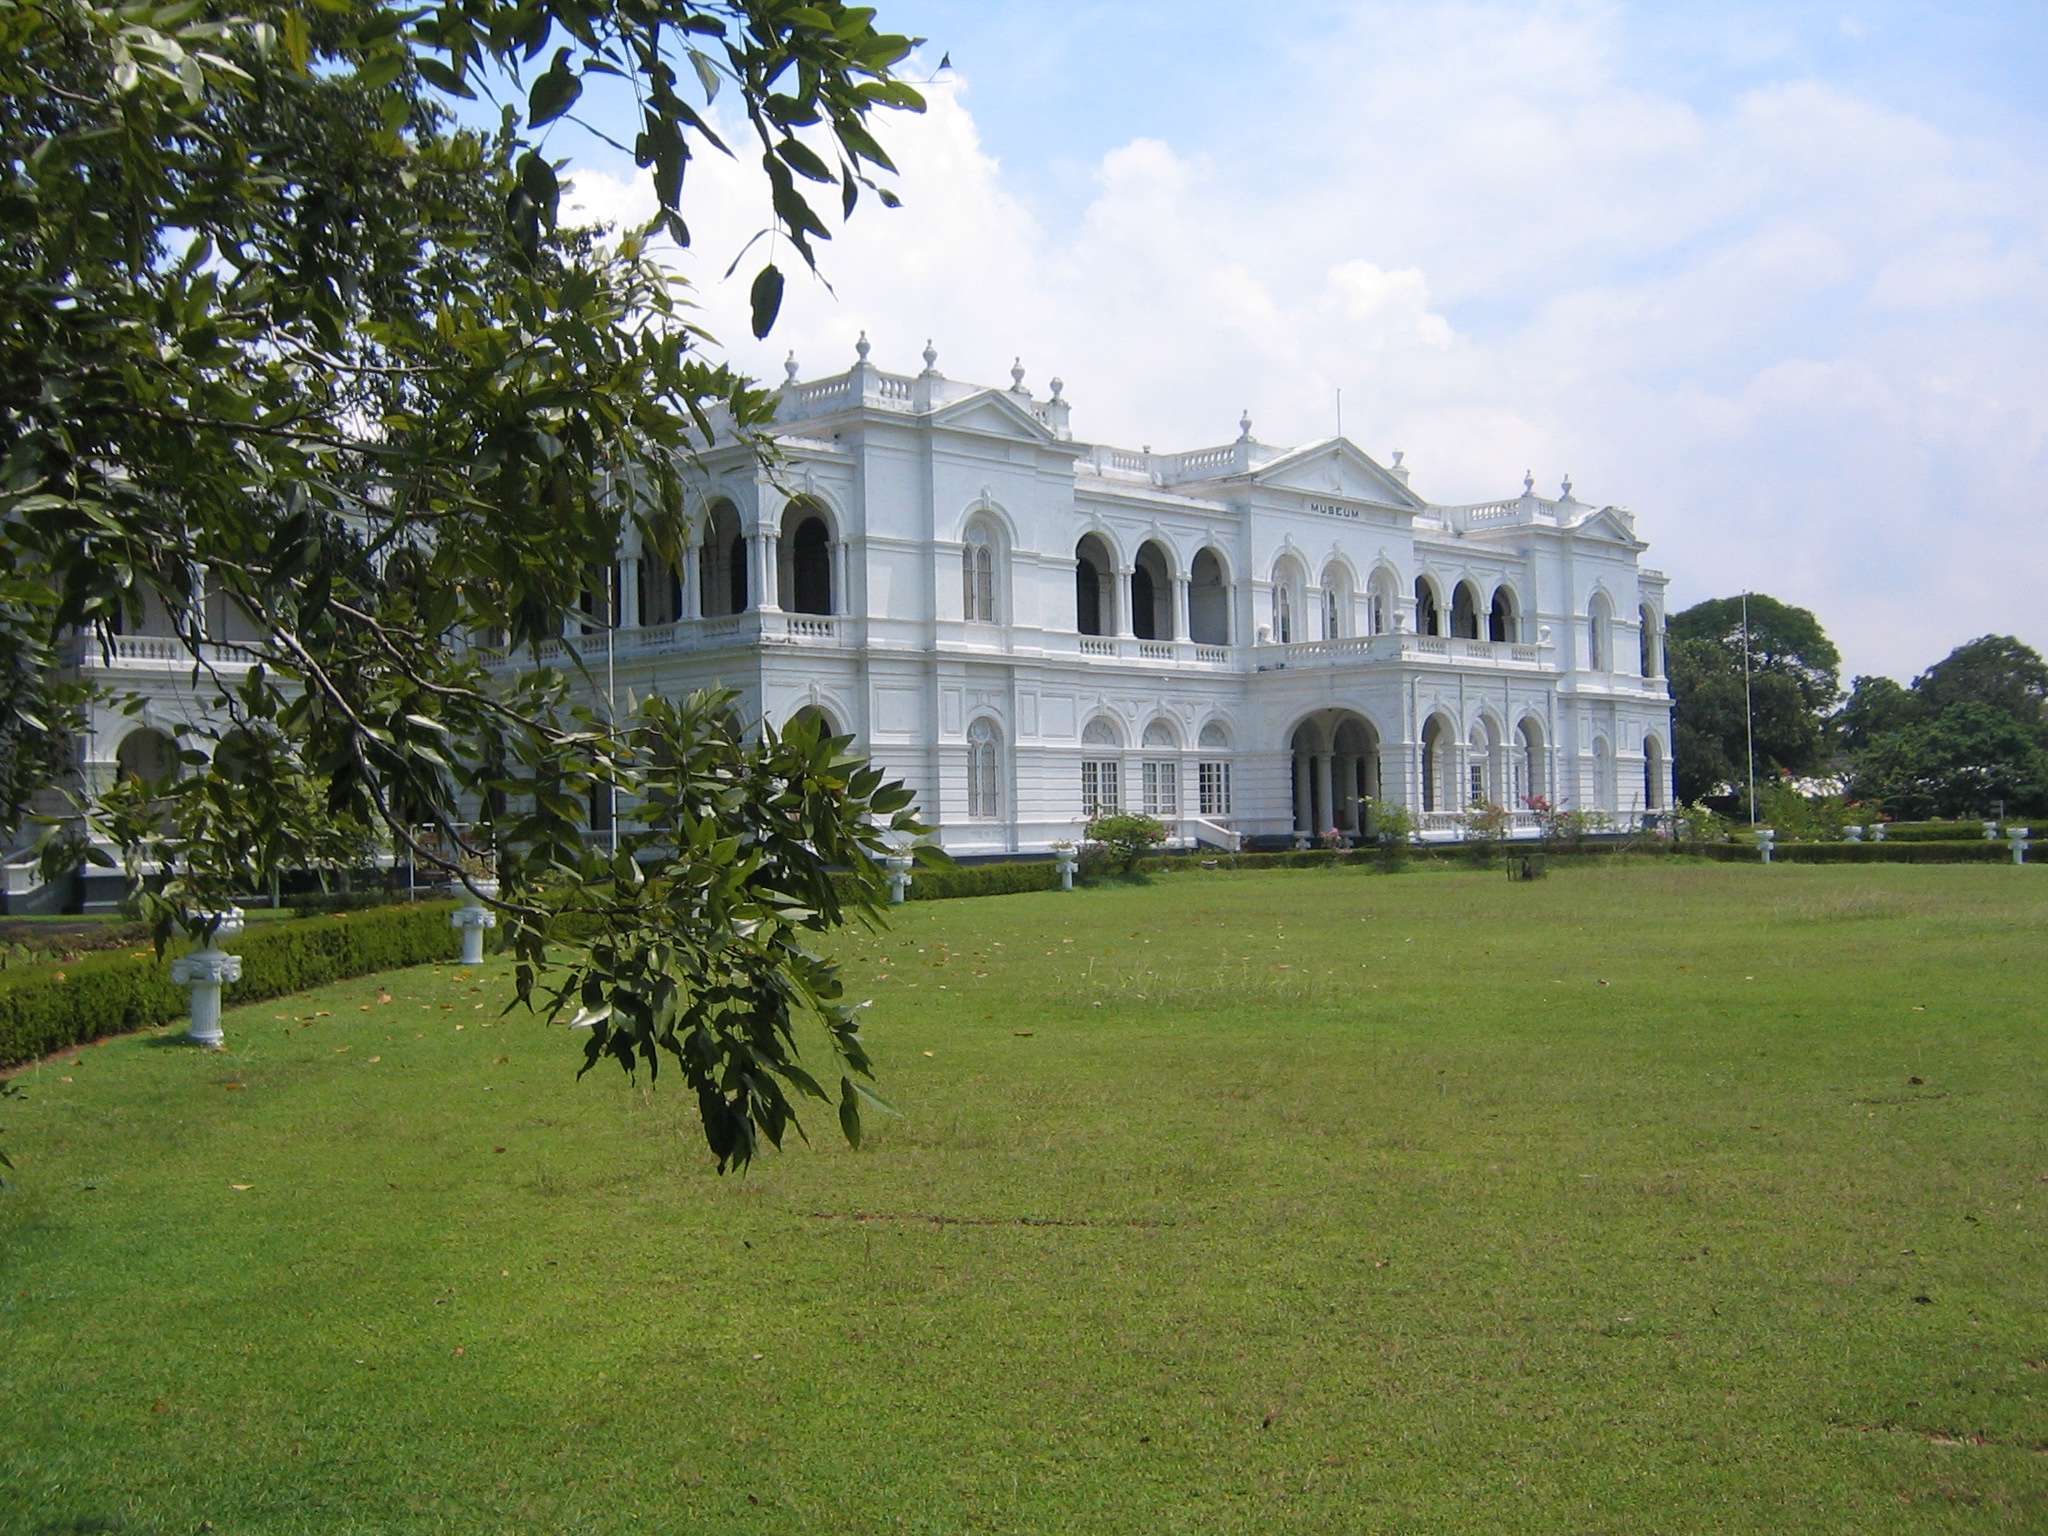 可倫坡國家博物館 National Museum of Colombo